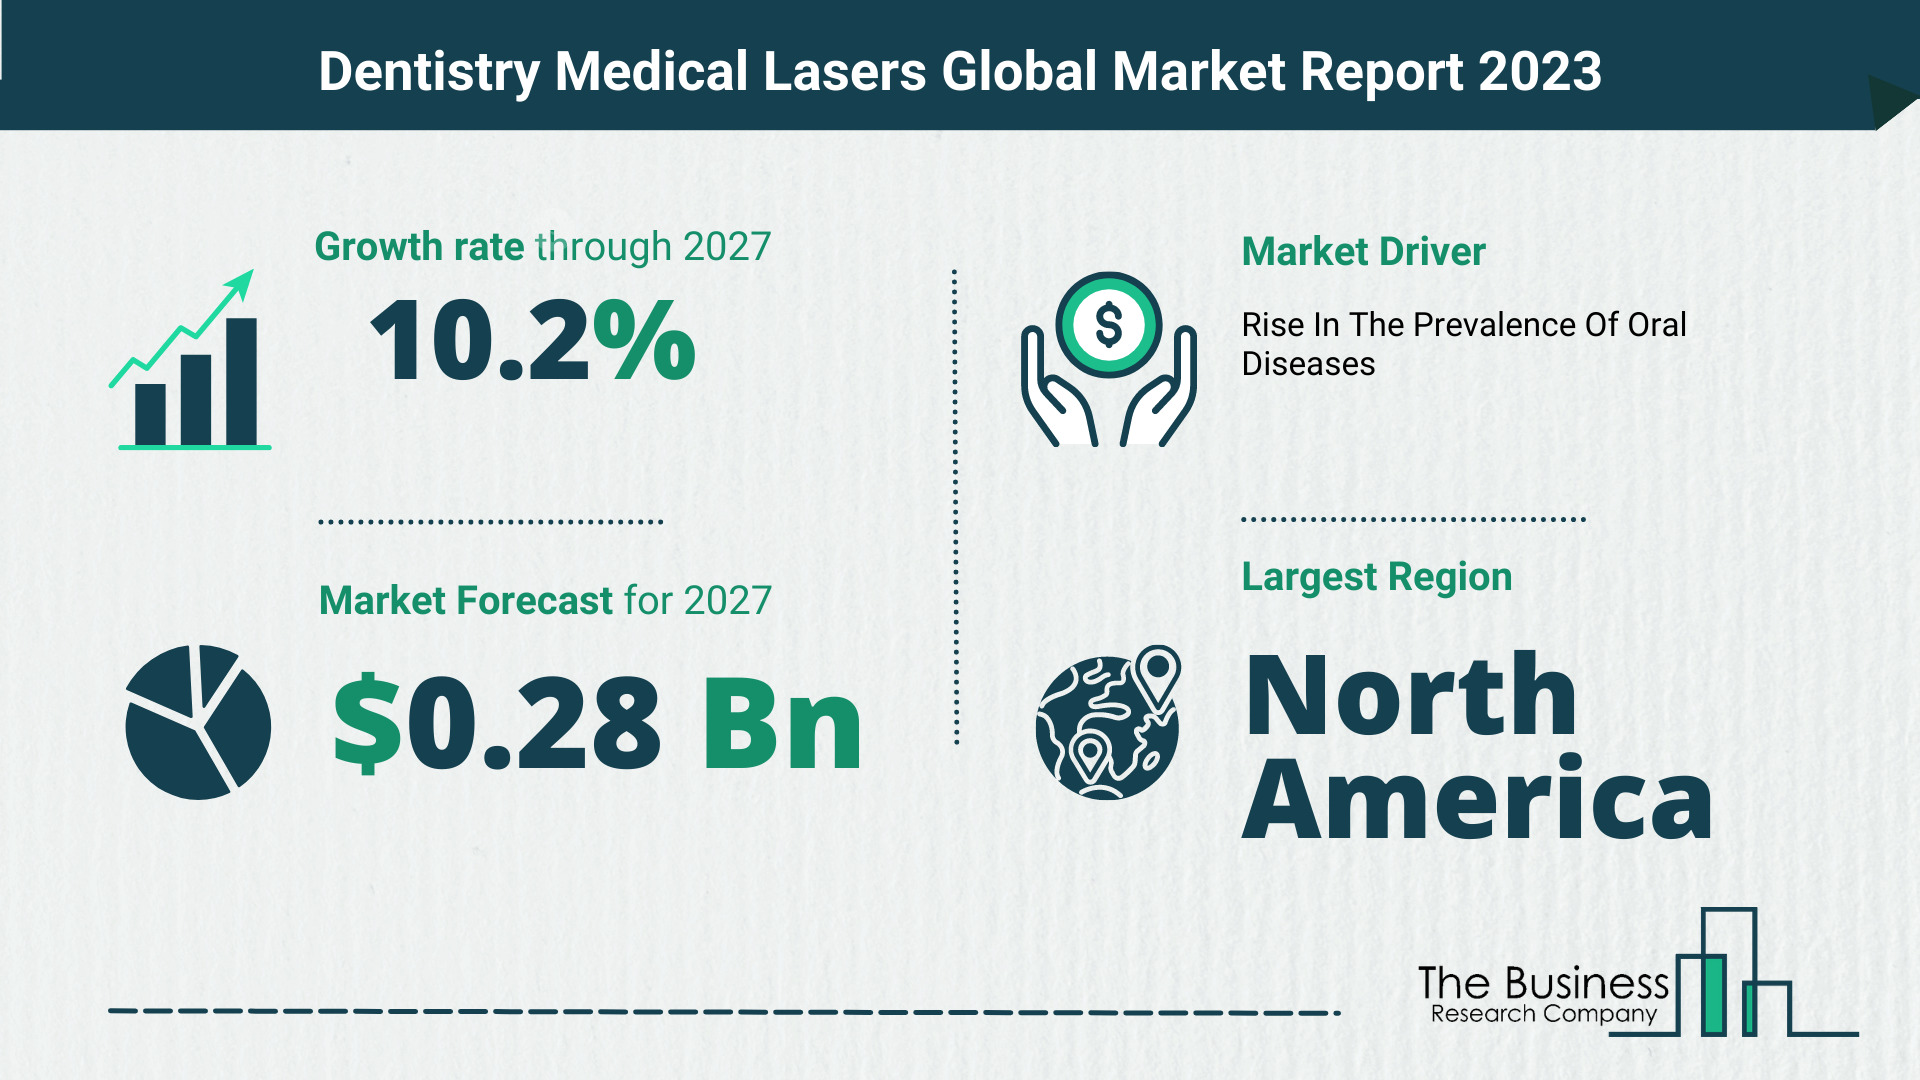 Global Dentistry Medical Lasers Market